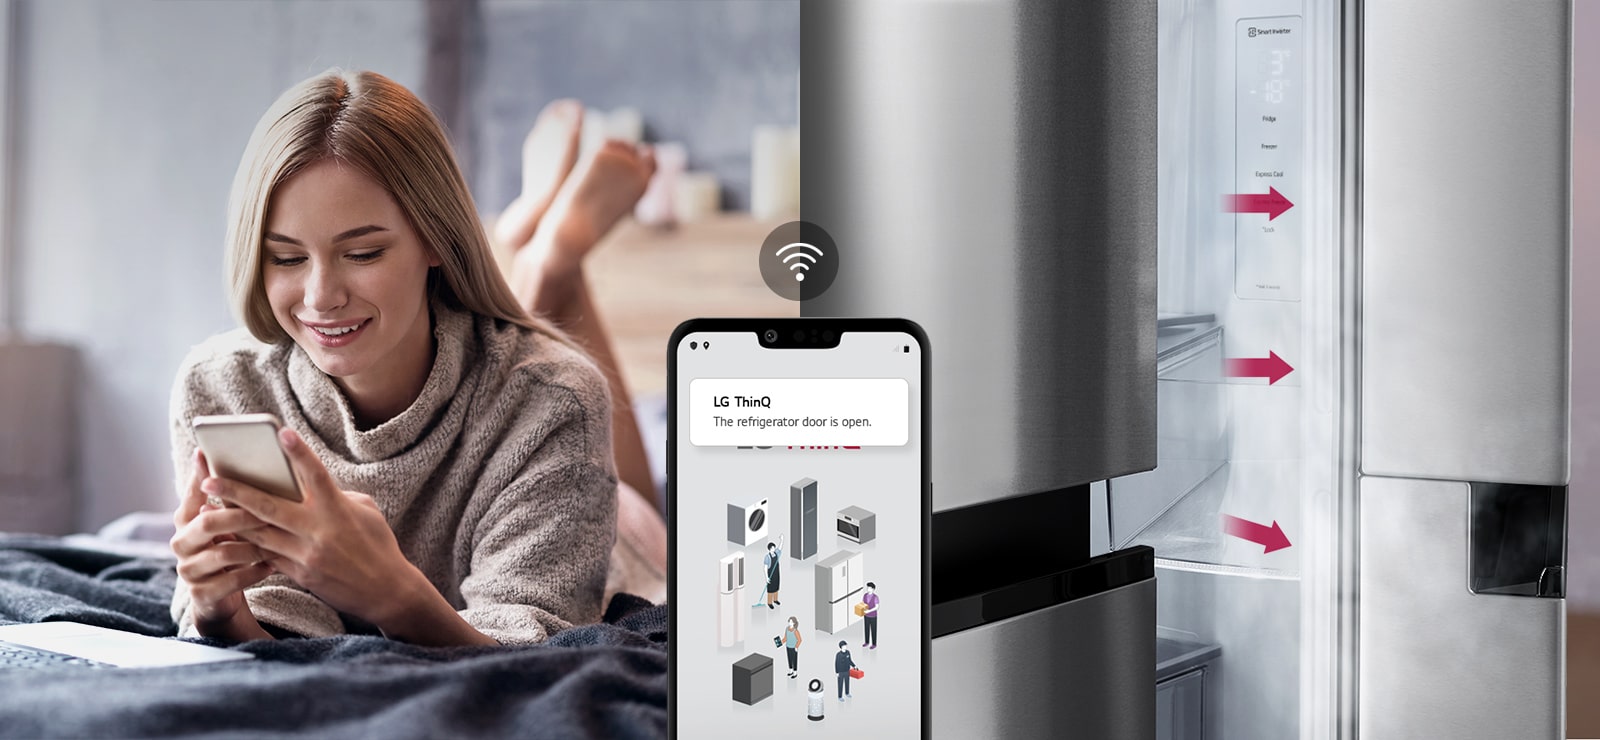 L’image de gauche montre une femme debout dans une épicerie en train de regarder son téléphone. L'image de droite montre la vue de face du réfrigérateur. Au centre des images se trouve une icône indiquant la connectivité entre le téléphone et le réfrigérateur.